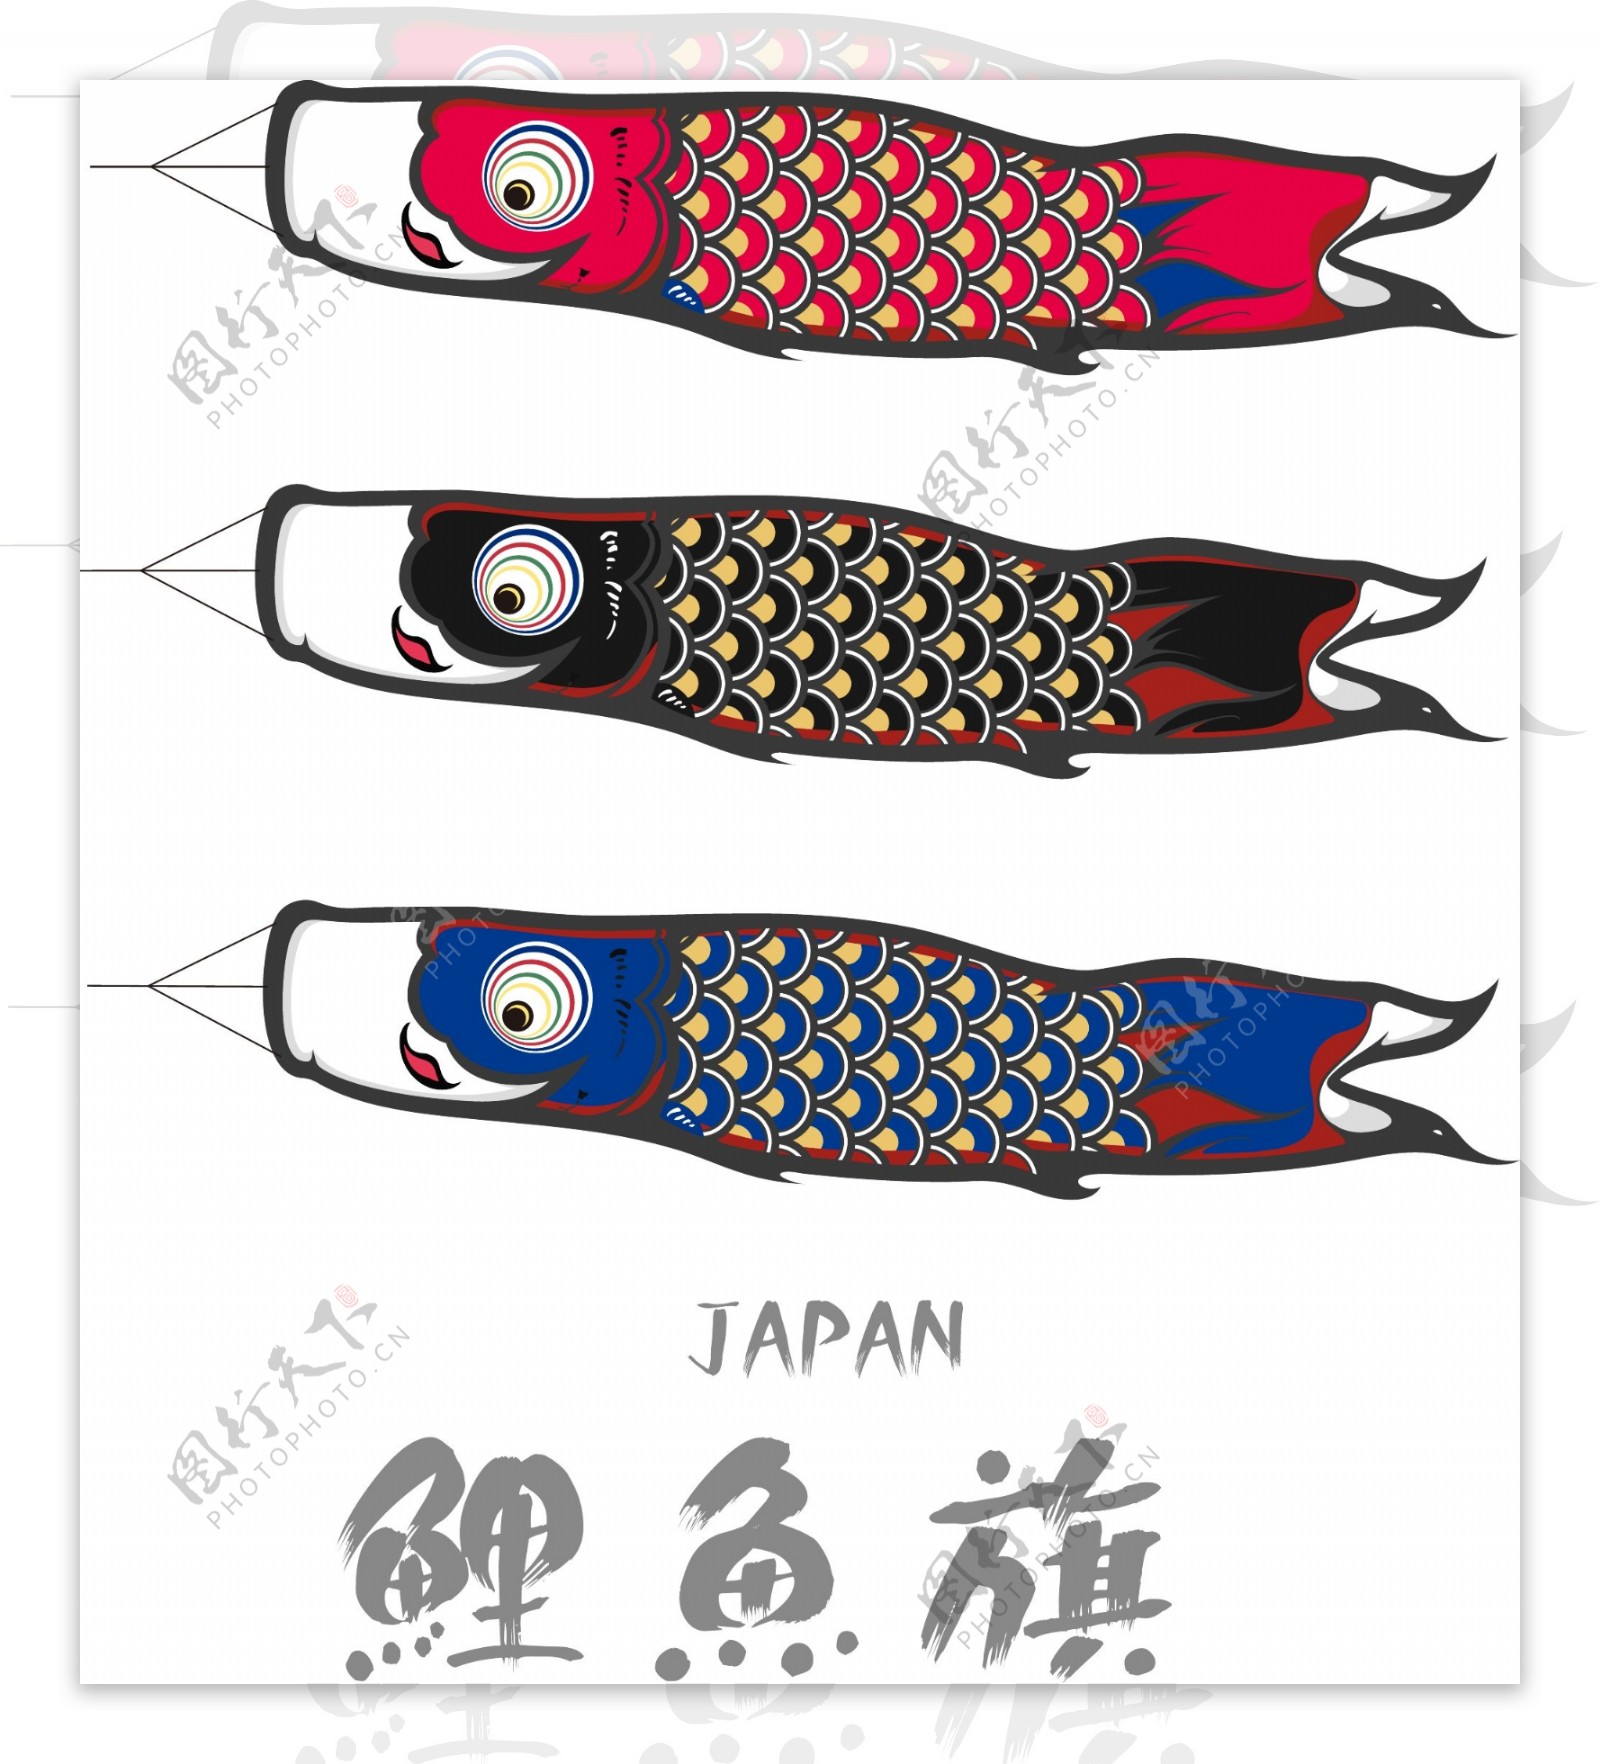 卡通日本鯉魚旗设计矢量素材